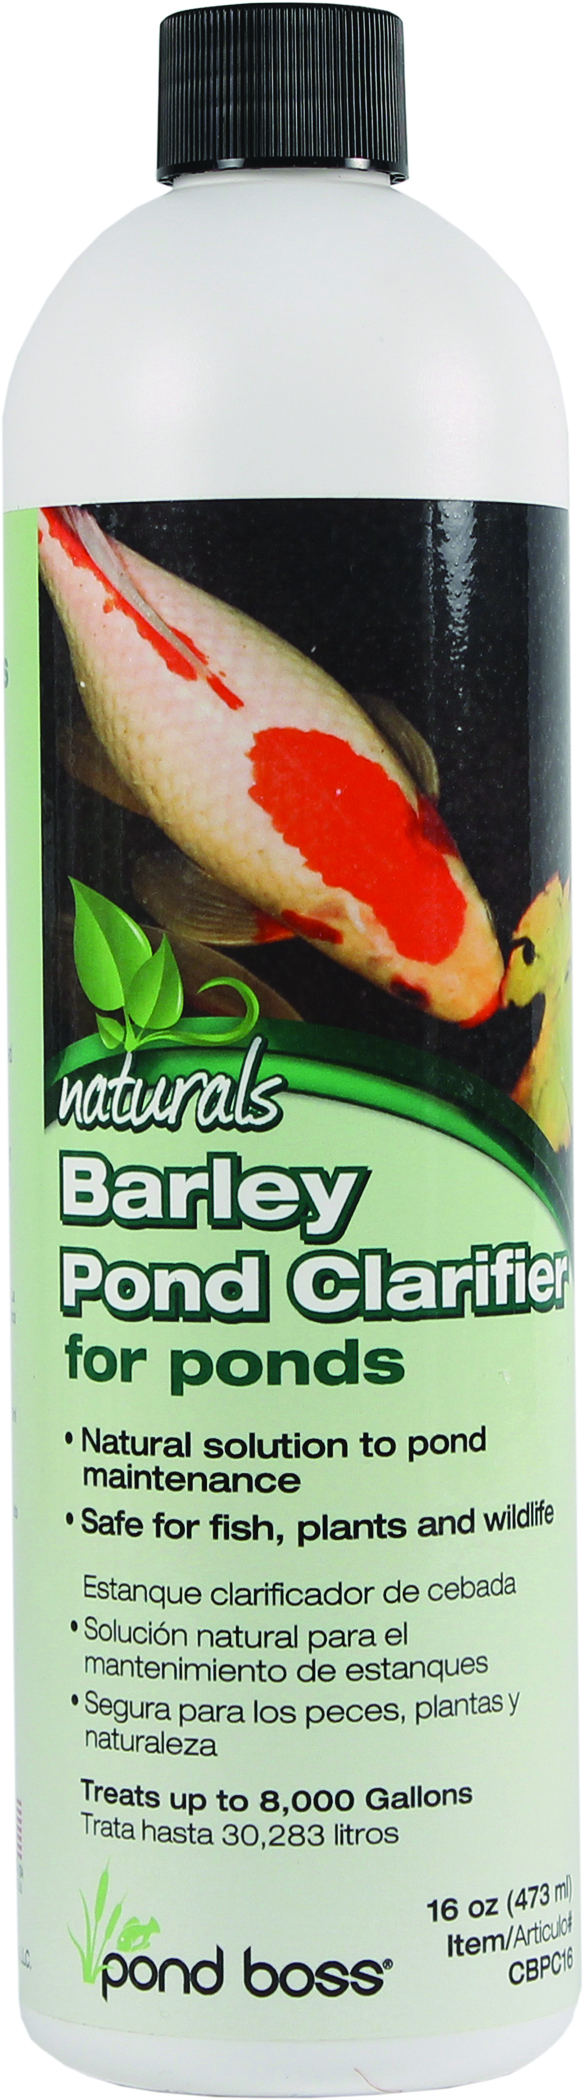 NATURALS BARLEY POND CLARIFIER FOR PONDS